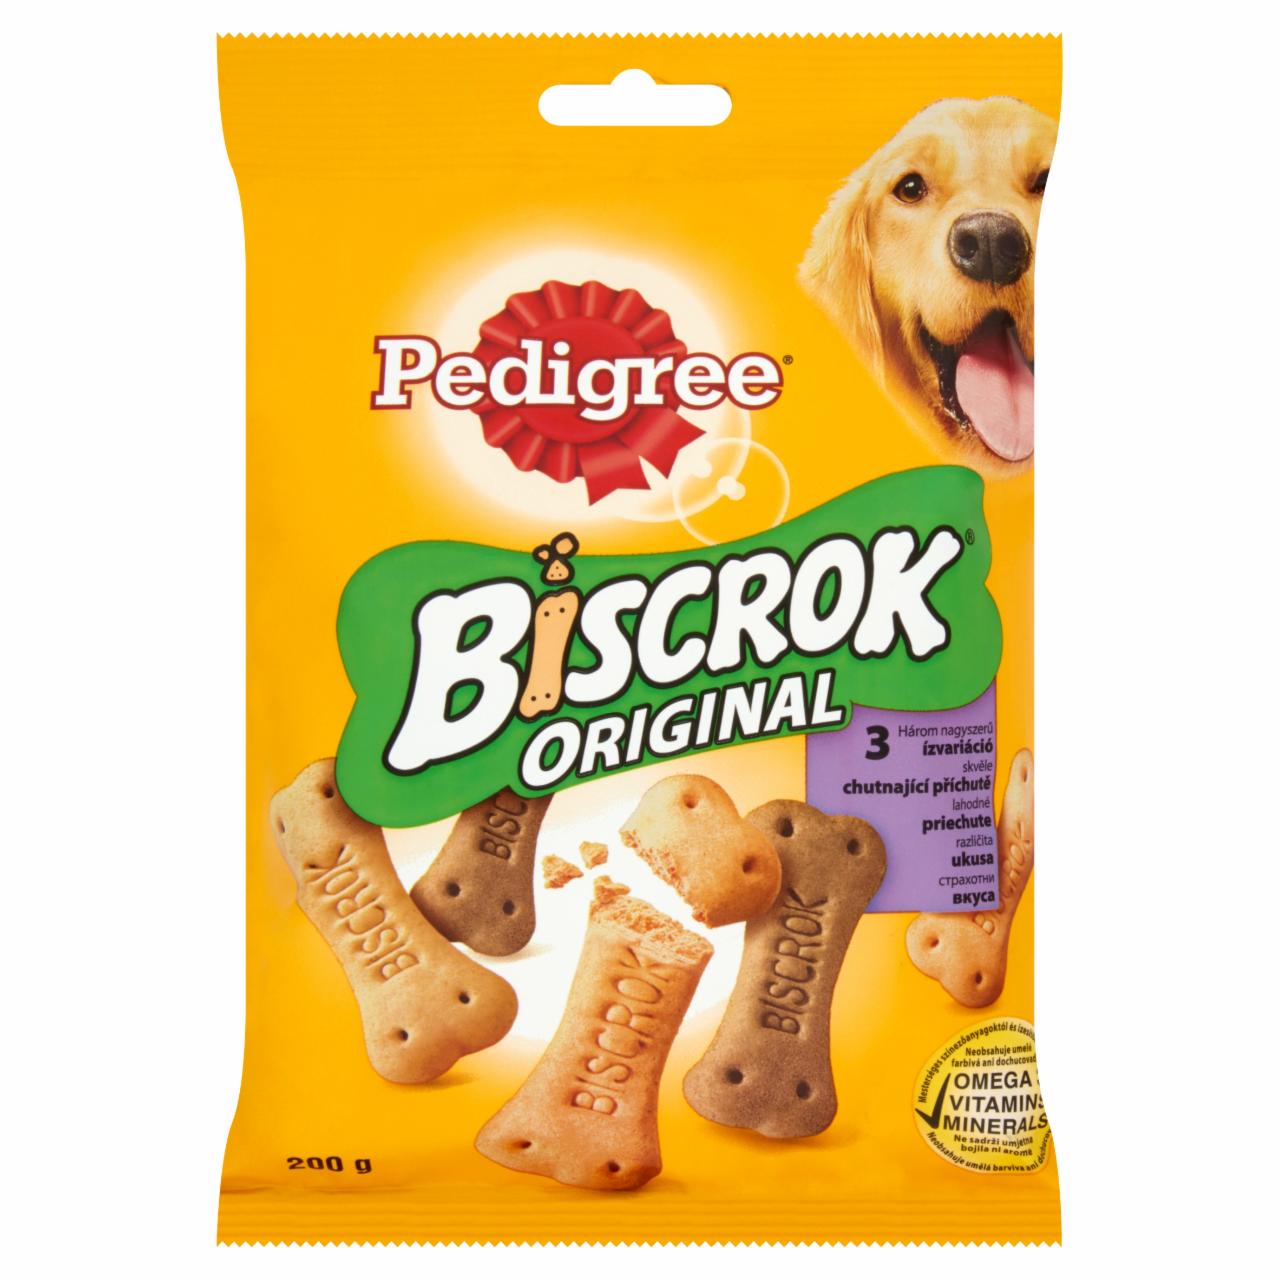 Képek - Pedigree Biscrok Multi Mix csirke-marha-bárány kiegészítő állateledel felnőtt kutyák számára 200 g